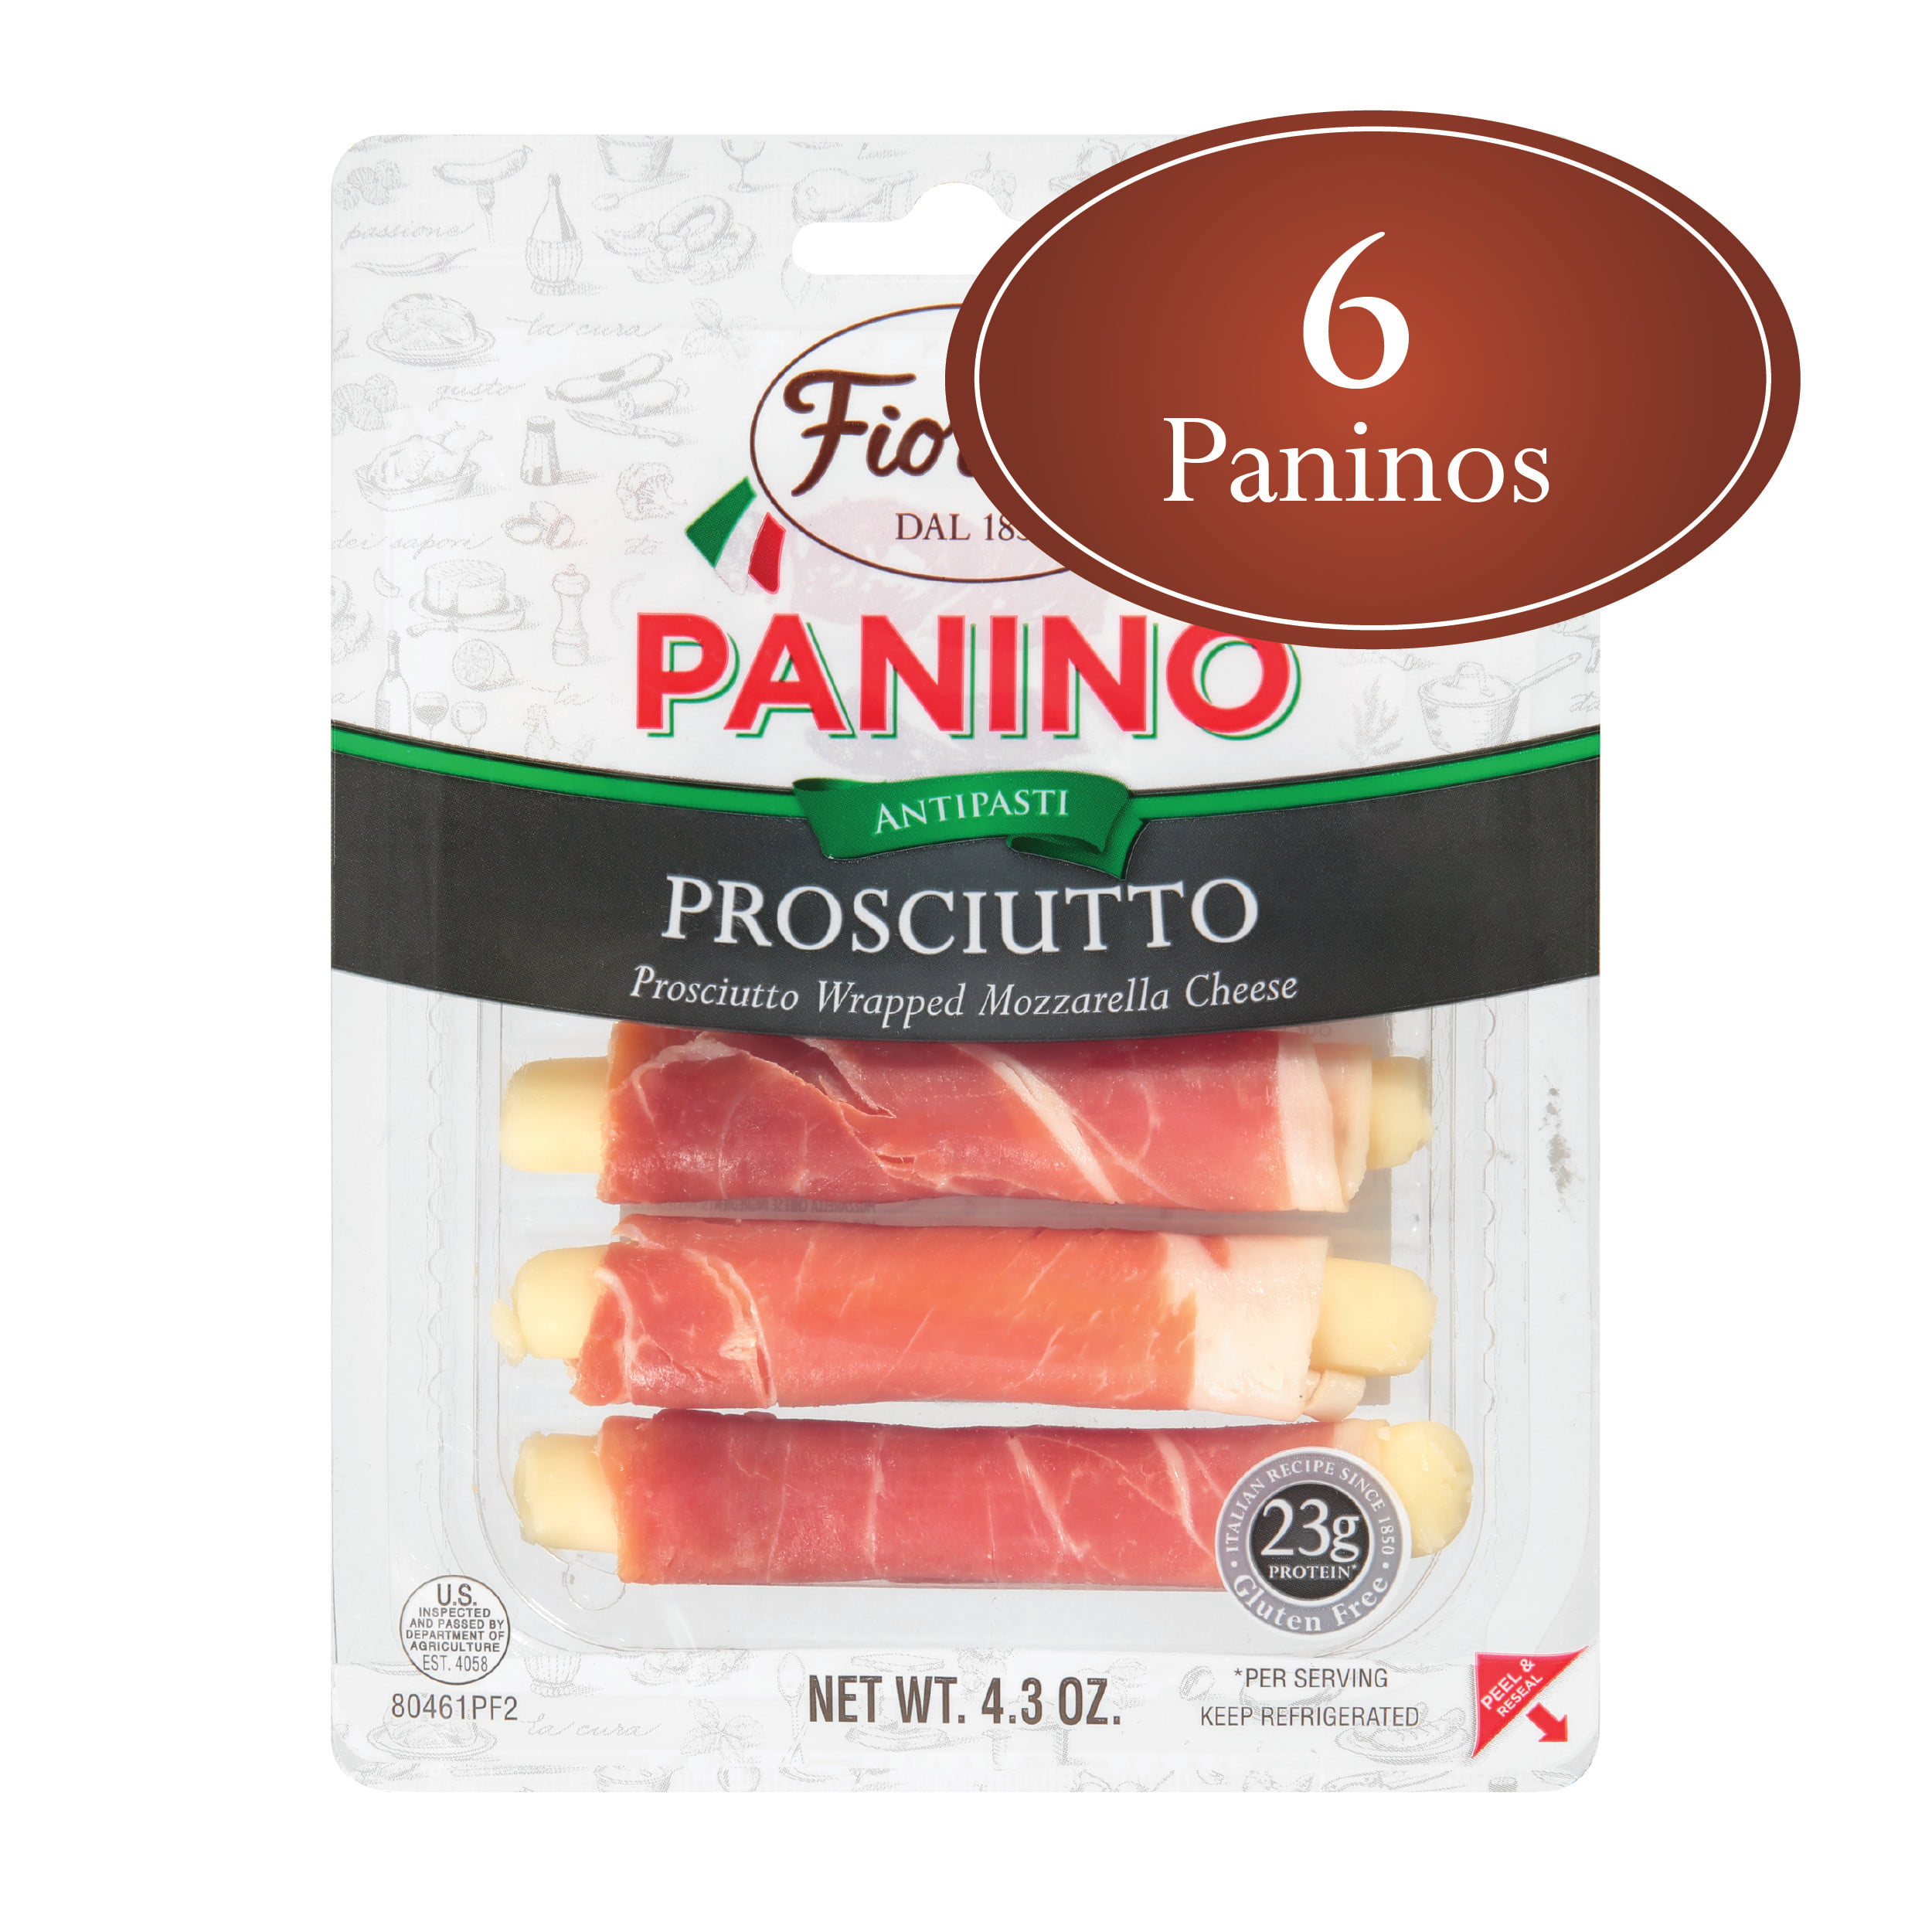 Fiorucci Prosciutto Wrapped Mozzarella Cheese Panino, Easy to Open ...